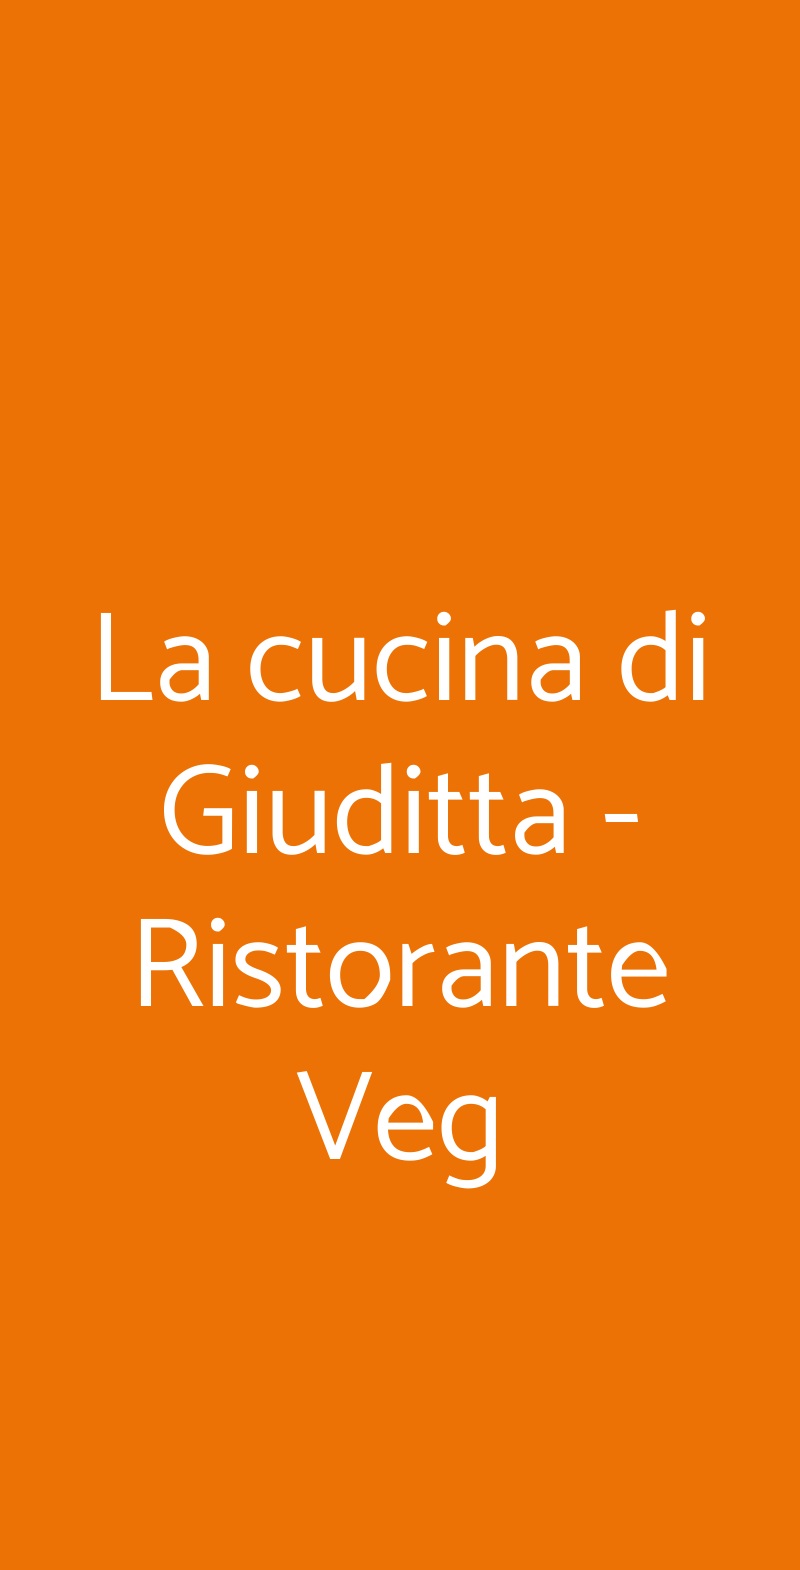 La cucina di Giuditta - Ristorante Veg Genova menù 1 pagina